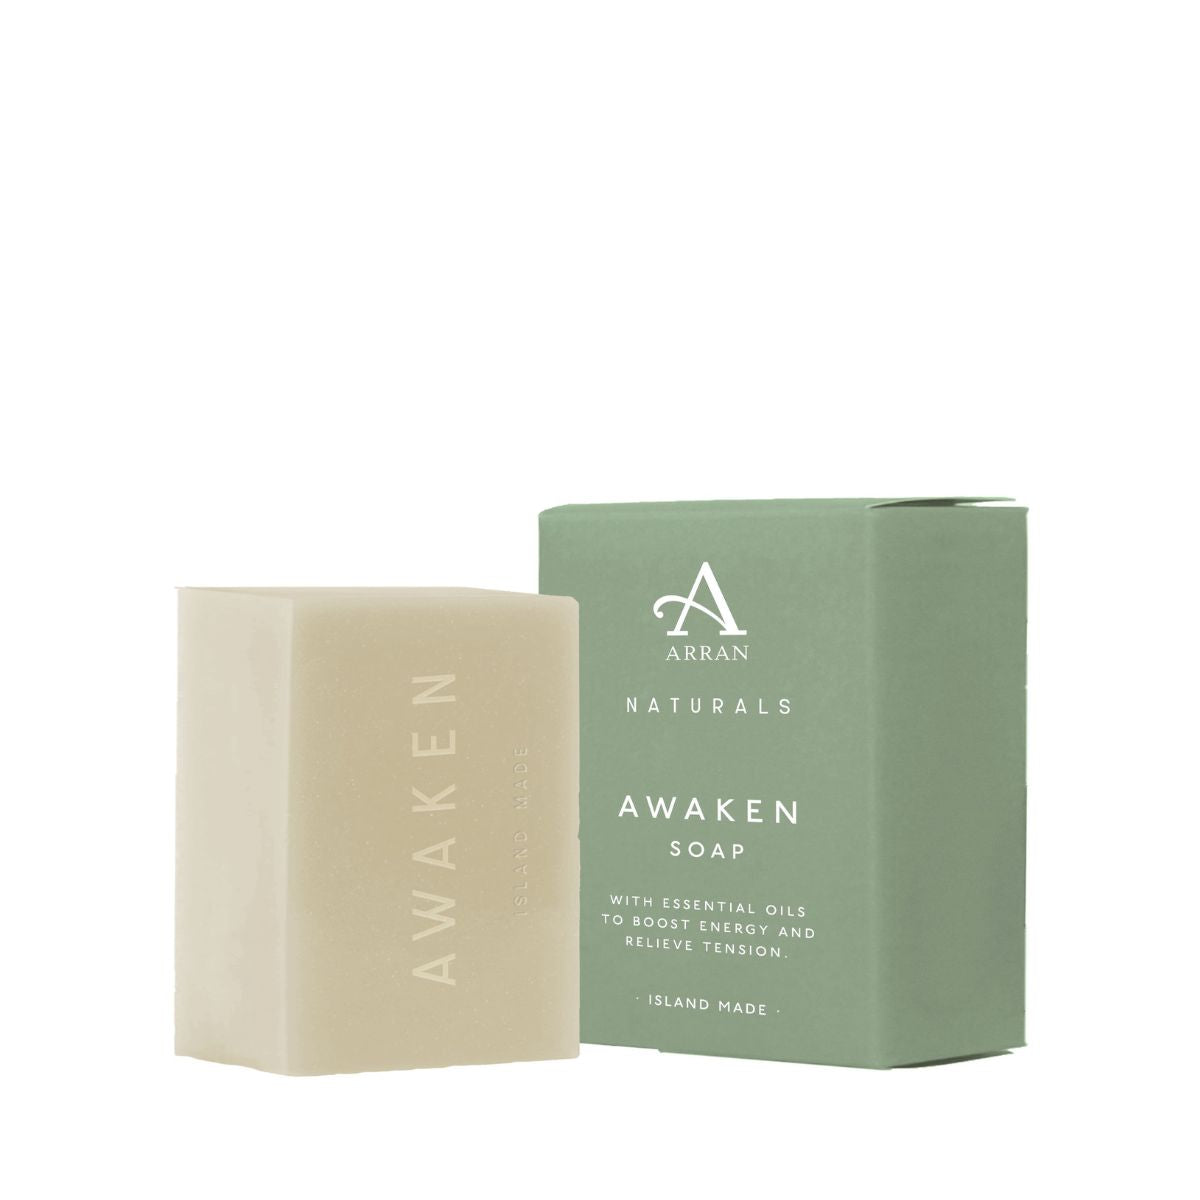 An image of Natural Soap - ARRAN Awaken Mint & Eucalyptus Natural Soap Bar | Made in Scotlan...